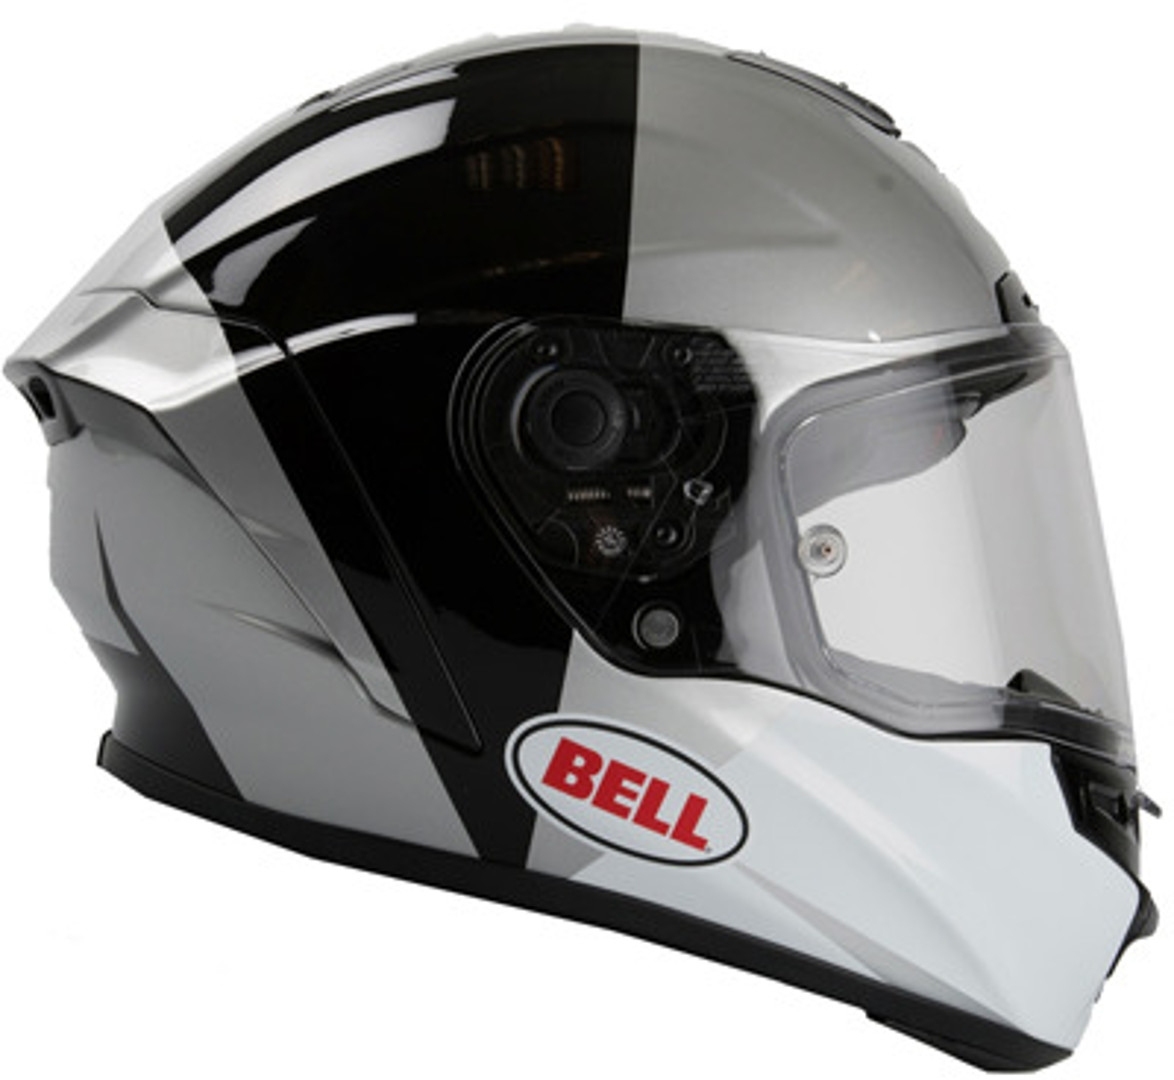 Bell Star Spectre Helmet, black-silver, Size XS, XS Black Silver unisex